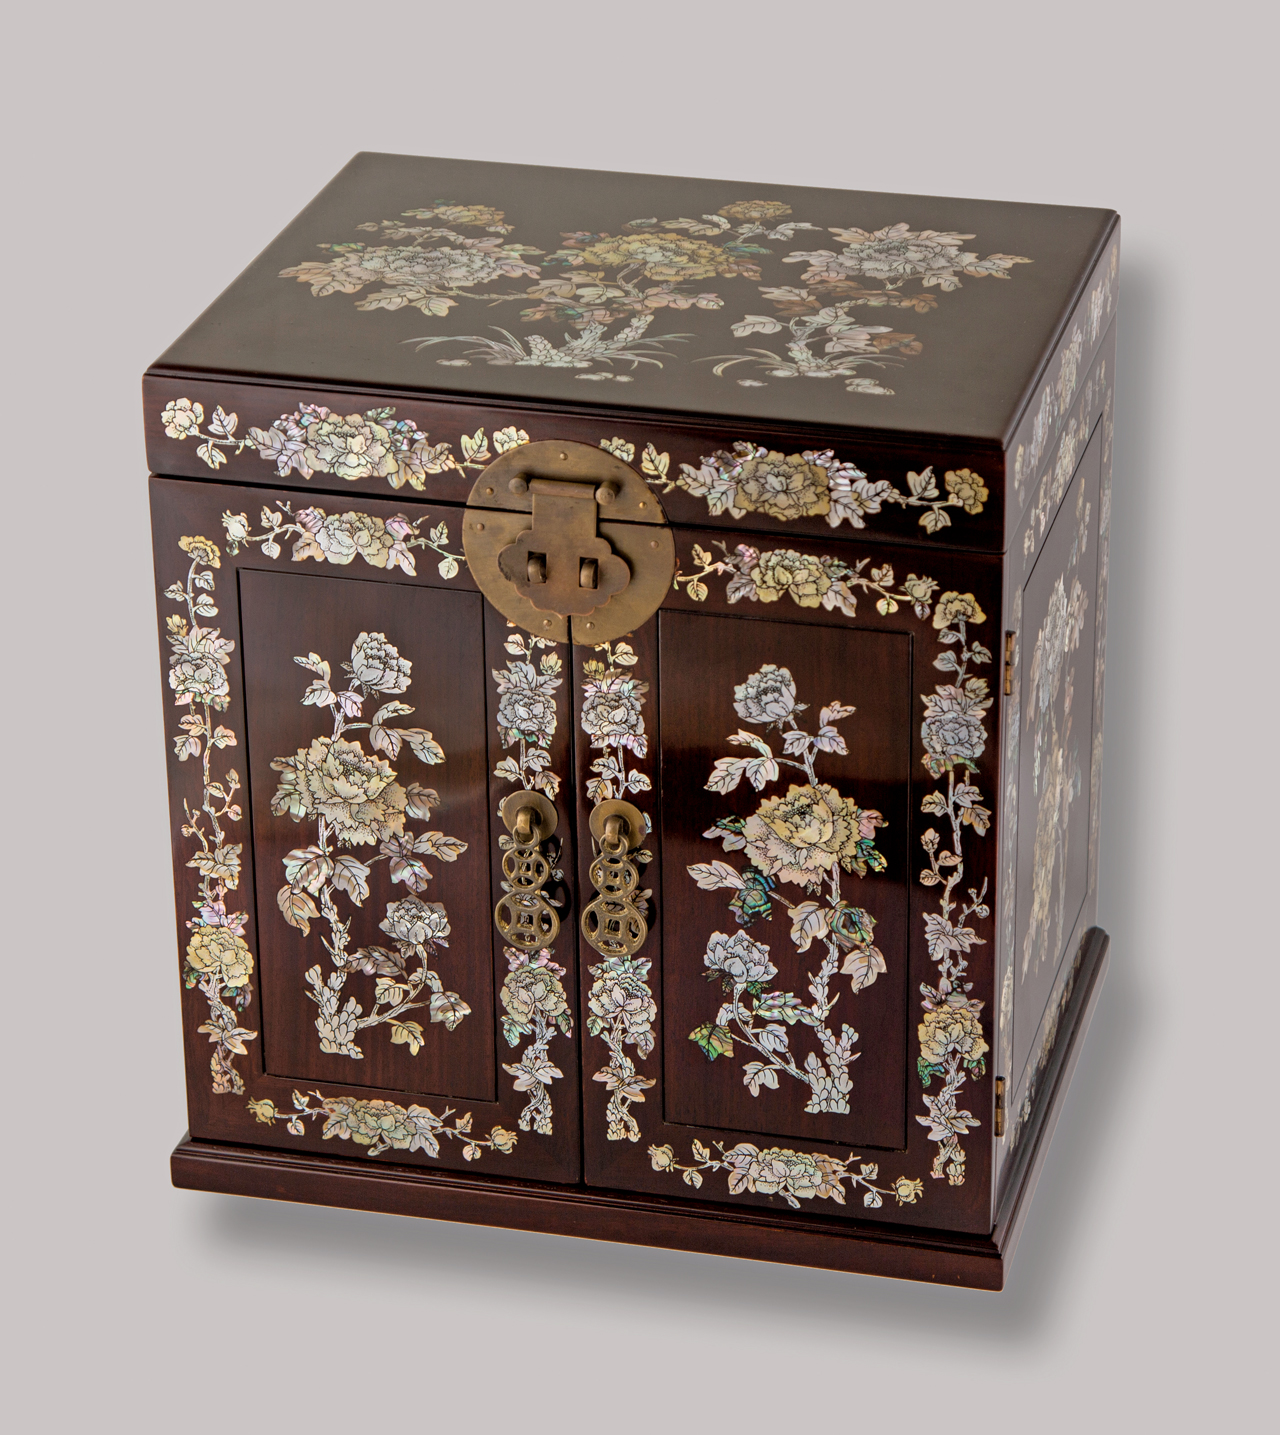 陳甫強螺鈿木櫃作品。新竹市文化局提供